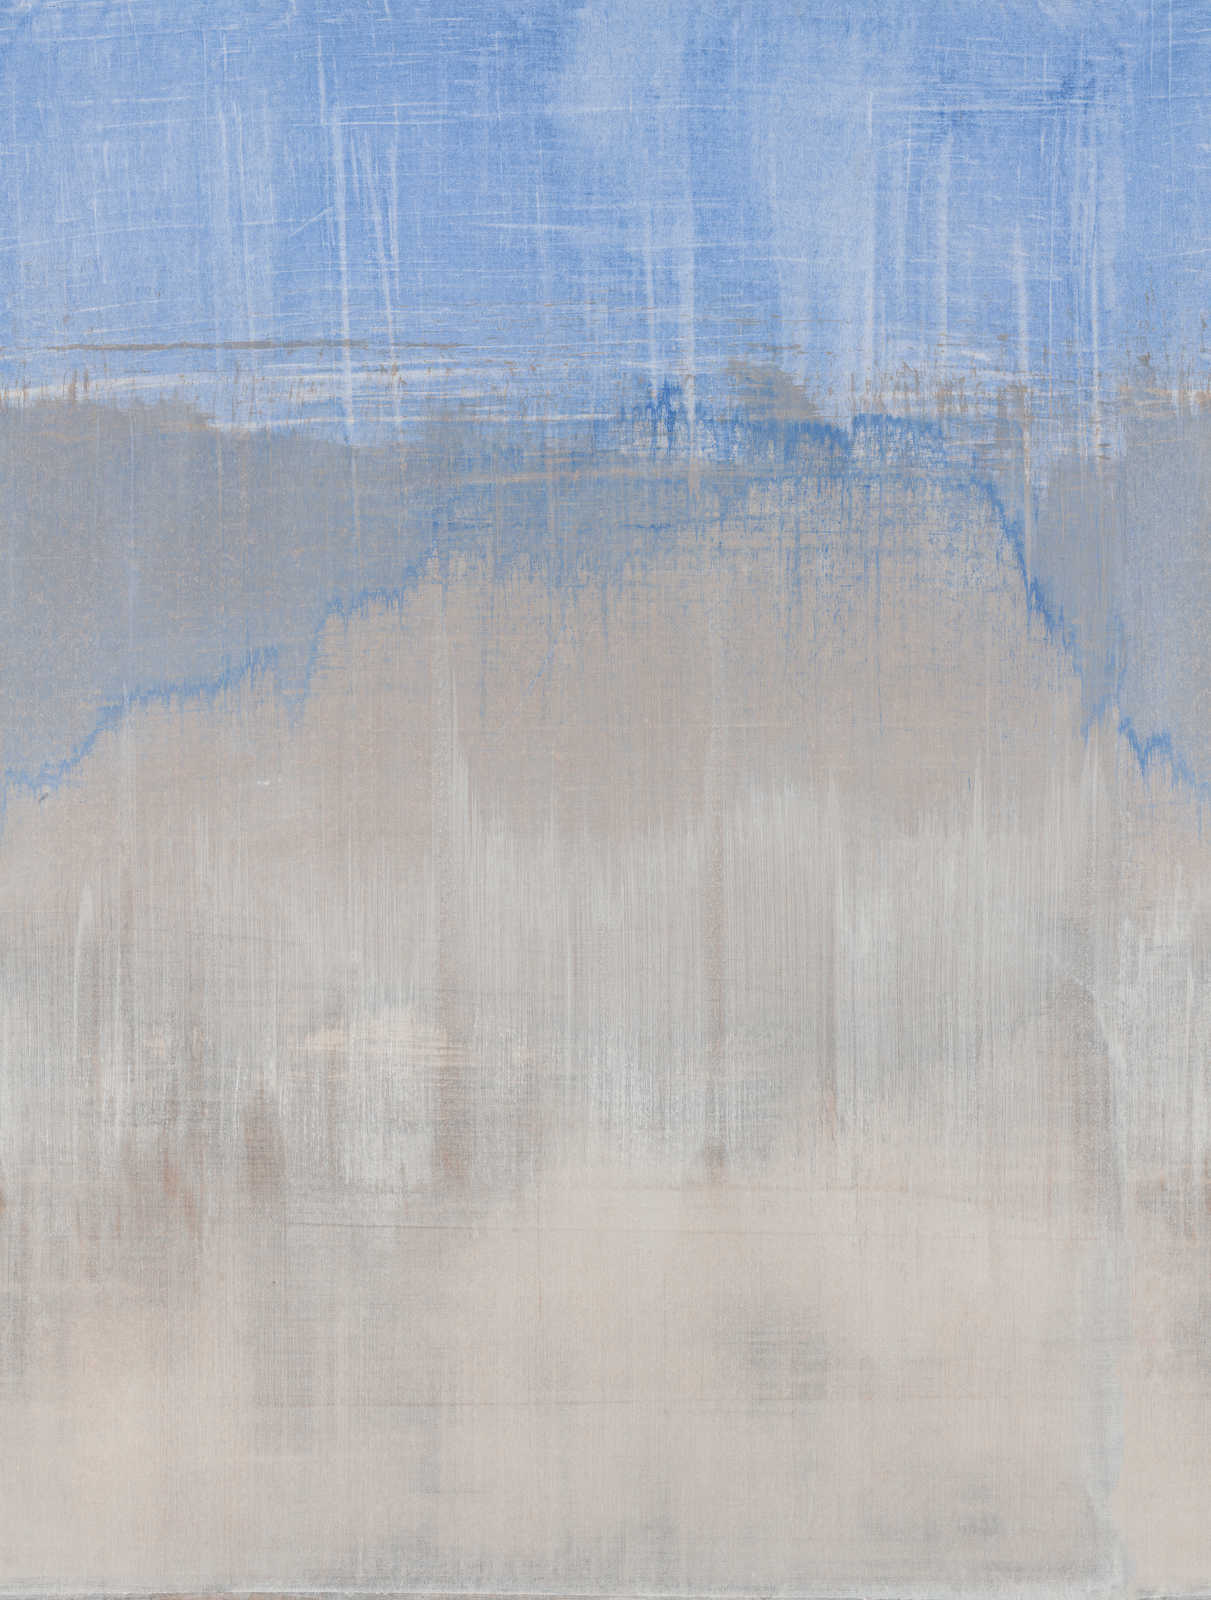             Papier peint intissé aquarelle aspect usé - bleu, gris
        